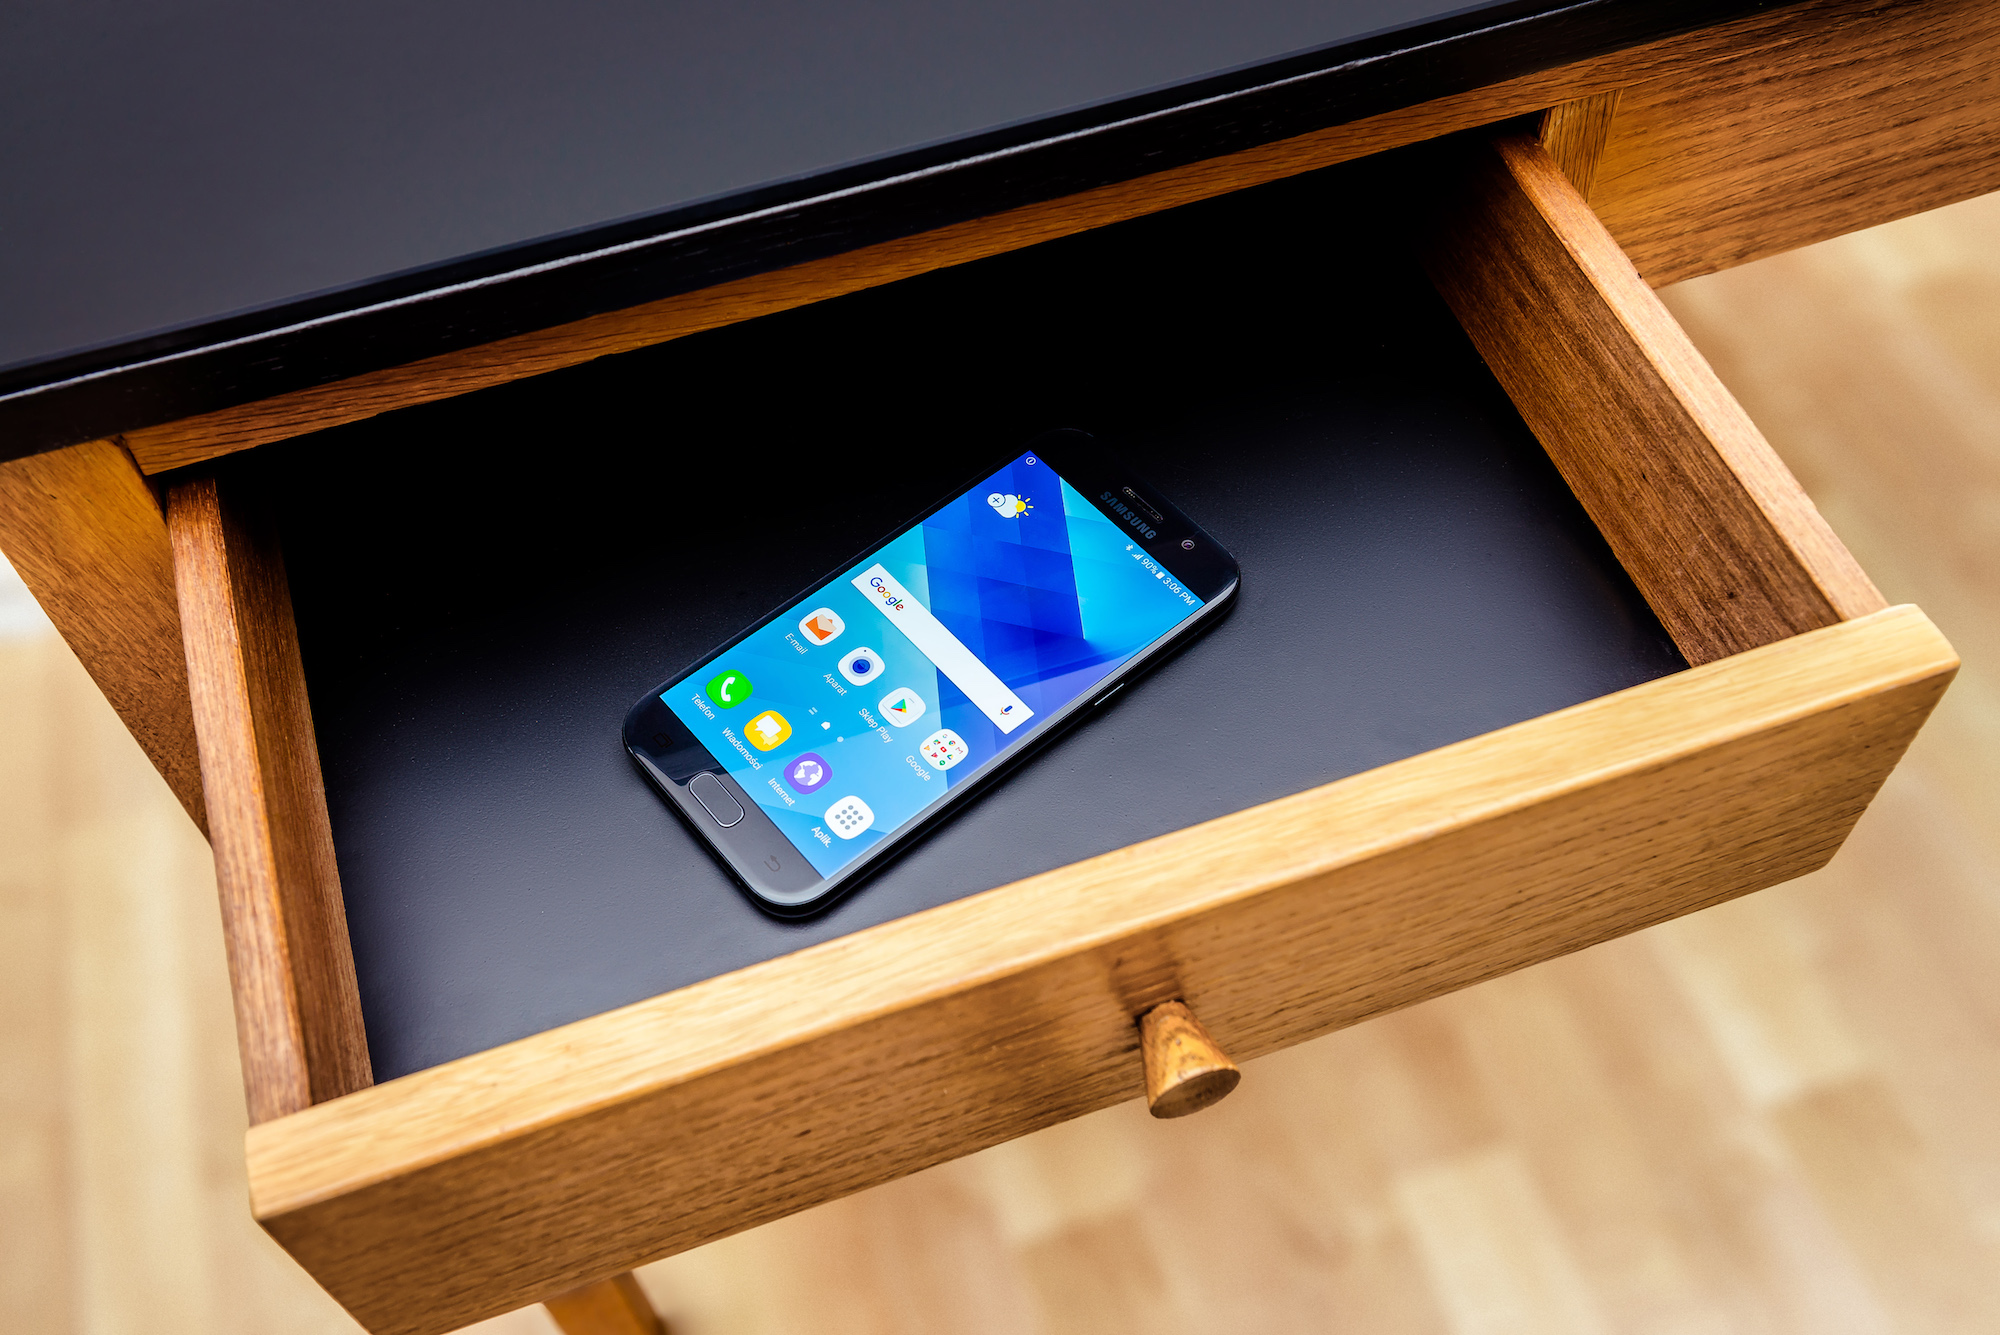 Zobaczcie kolekcję mebli Sylwii Biegaj zainspirowaną smartfonem Samsung Galaxy A5<